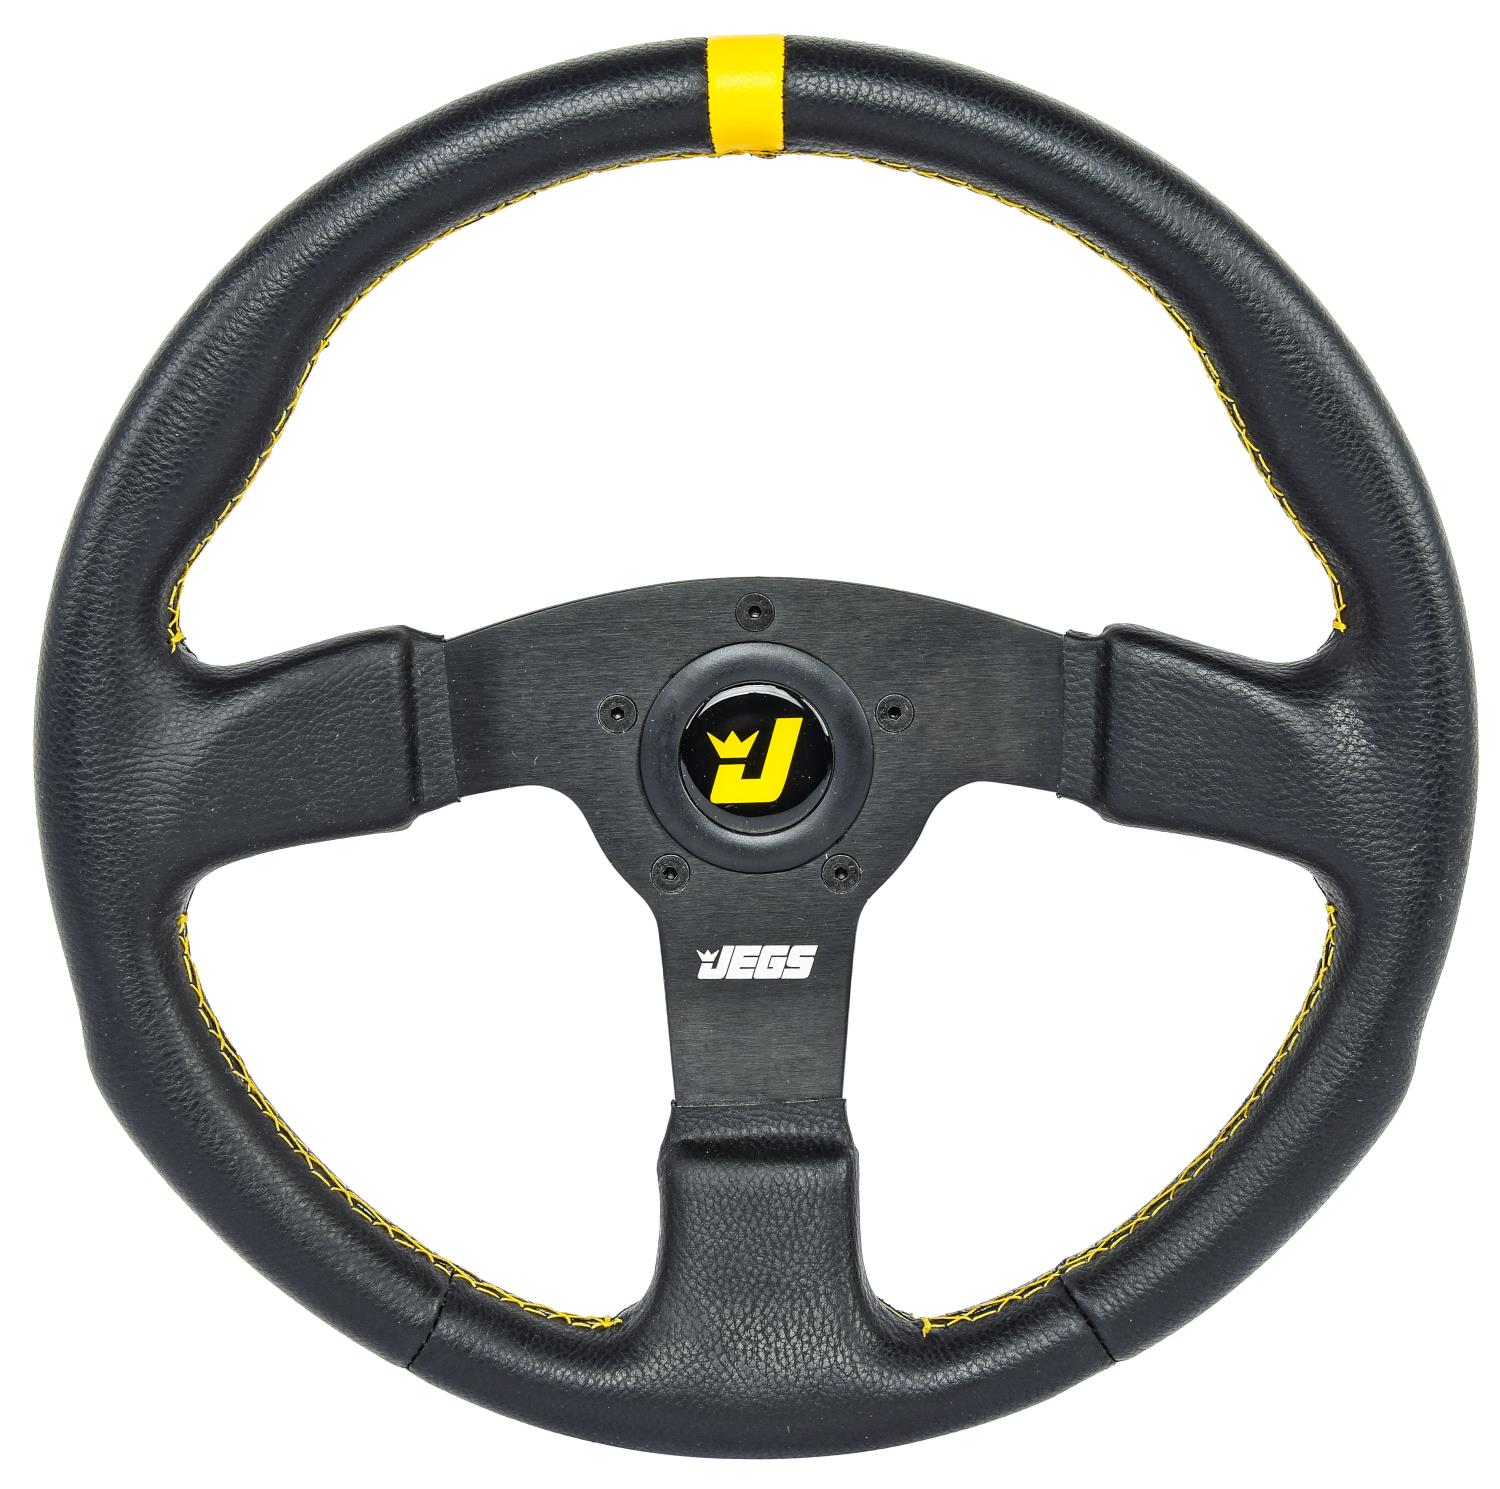 Premium Racing Steering Wheel, Black 3-Spoke with Black